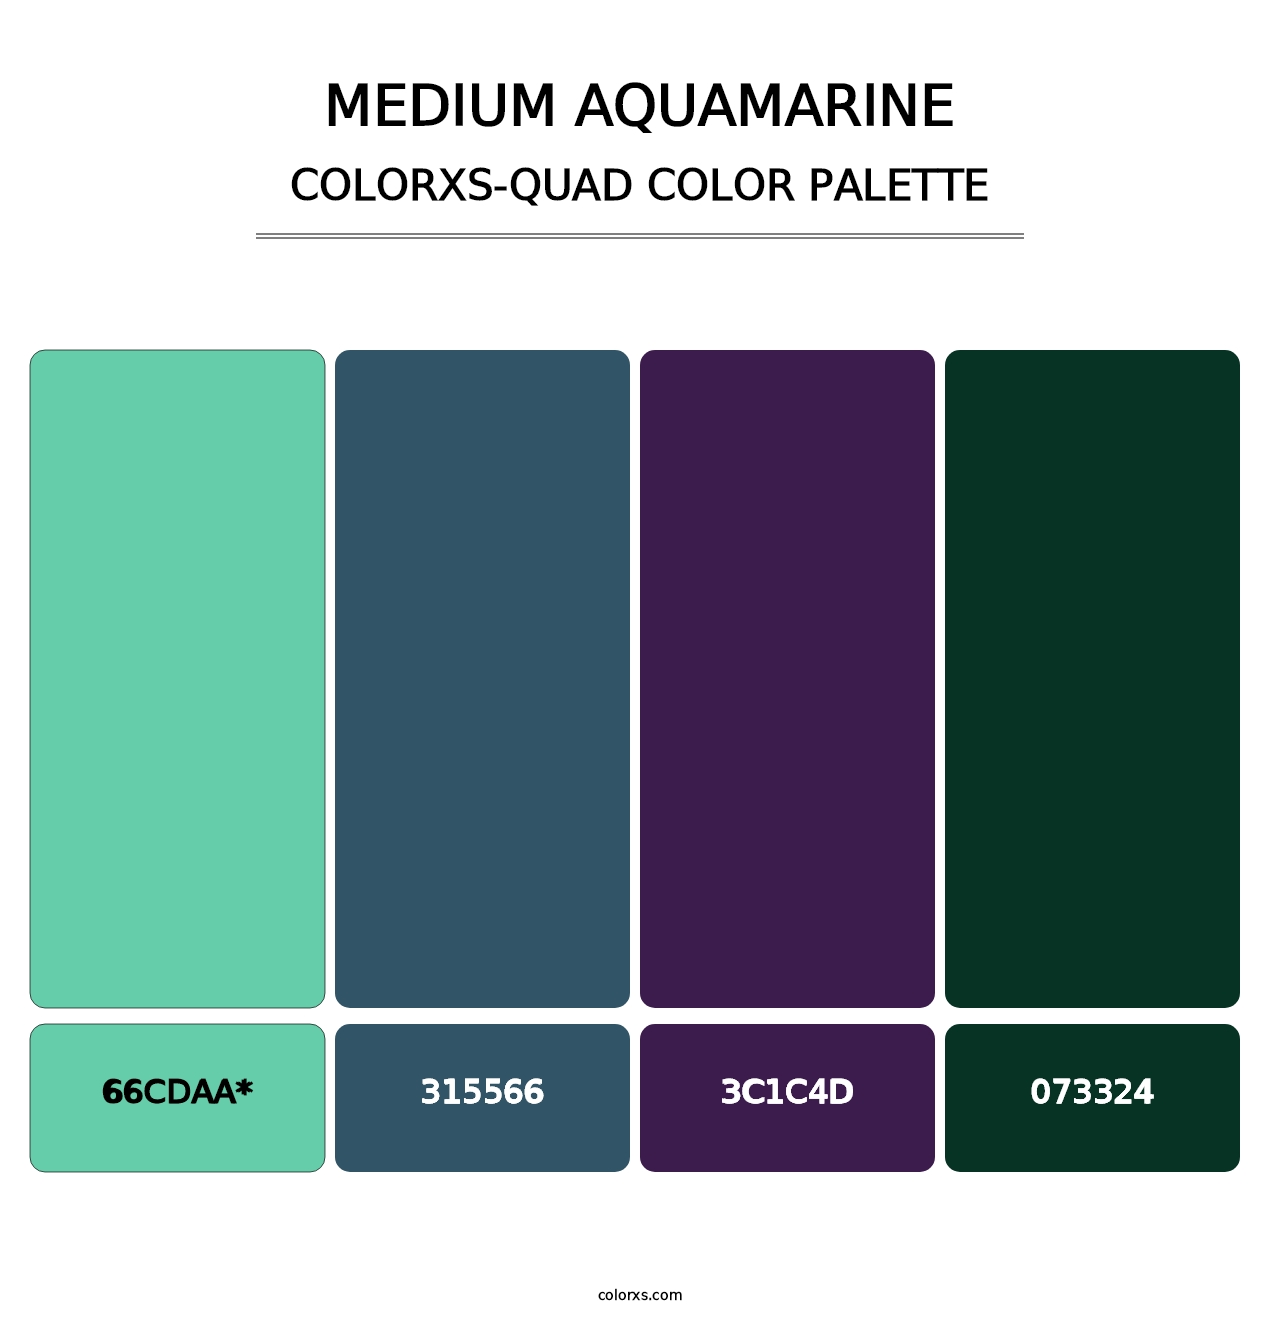 Medium Aquamarine - Colorxs Quad Palette